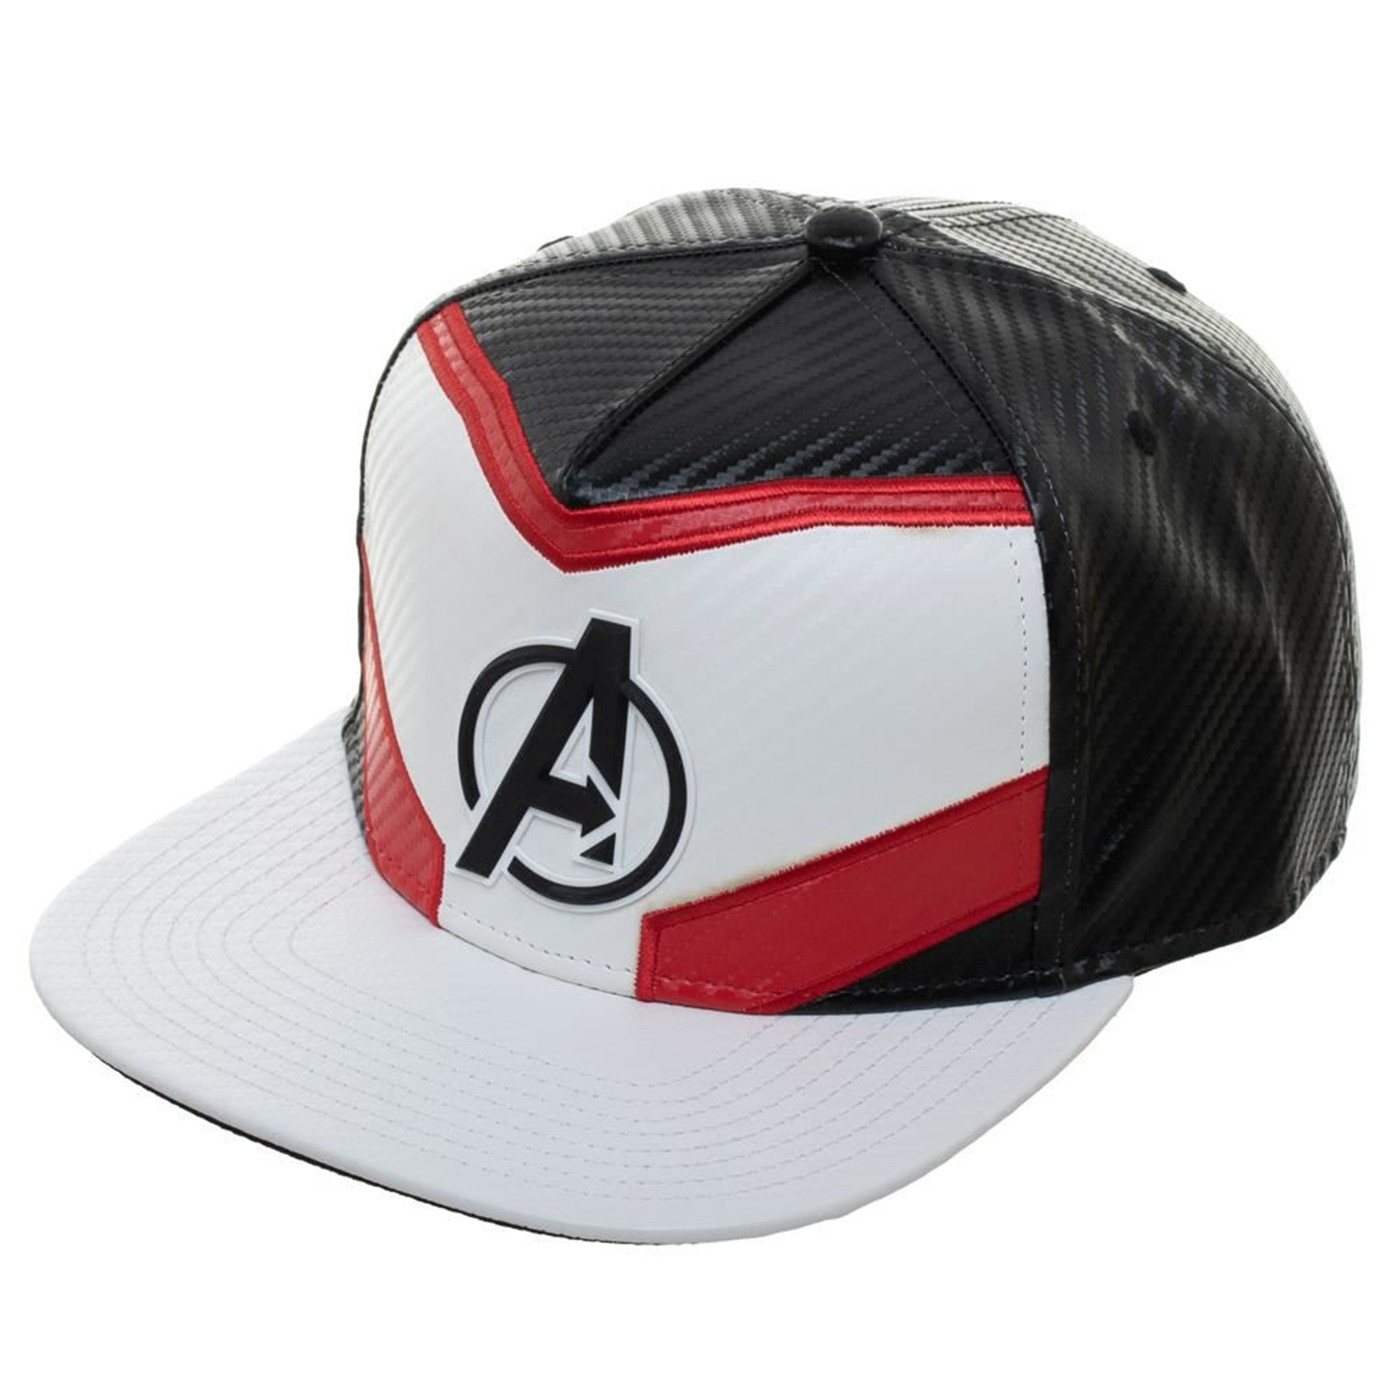 Avengers Endgame Quantum Armor Hat